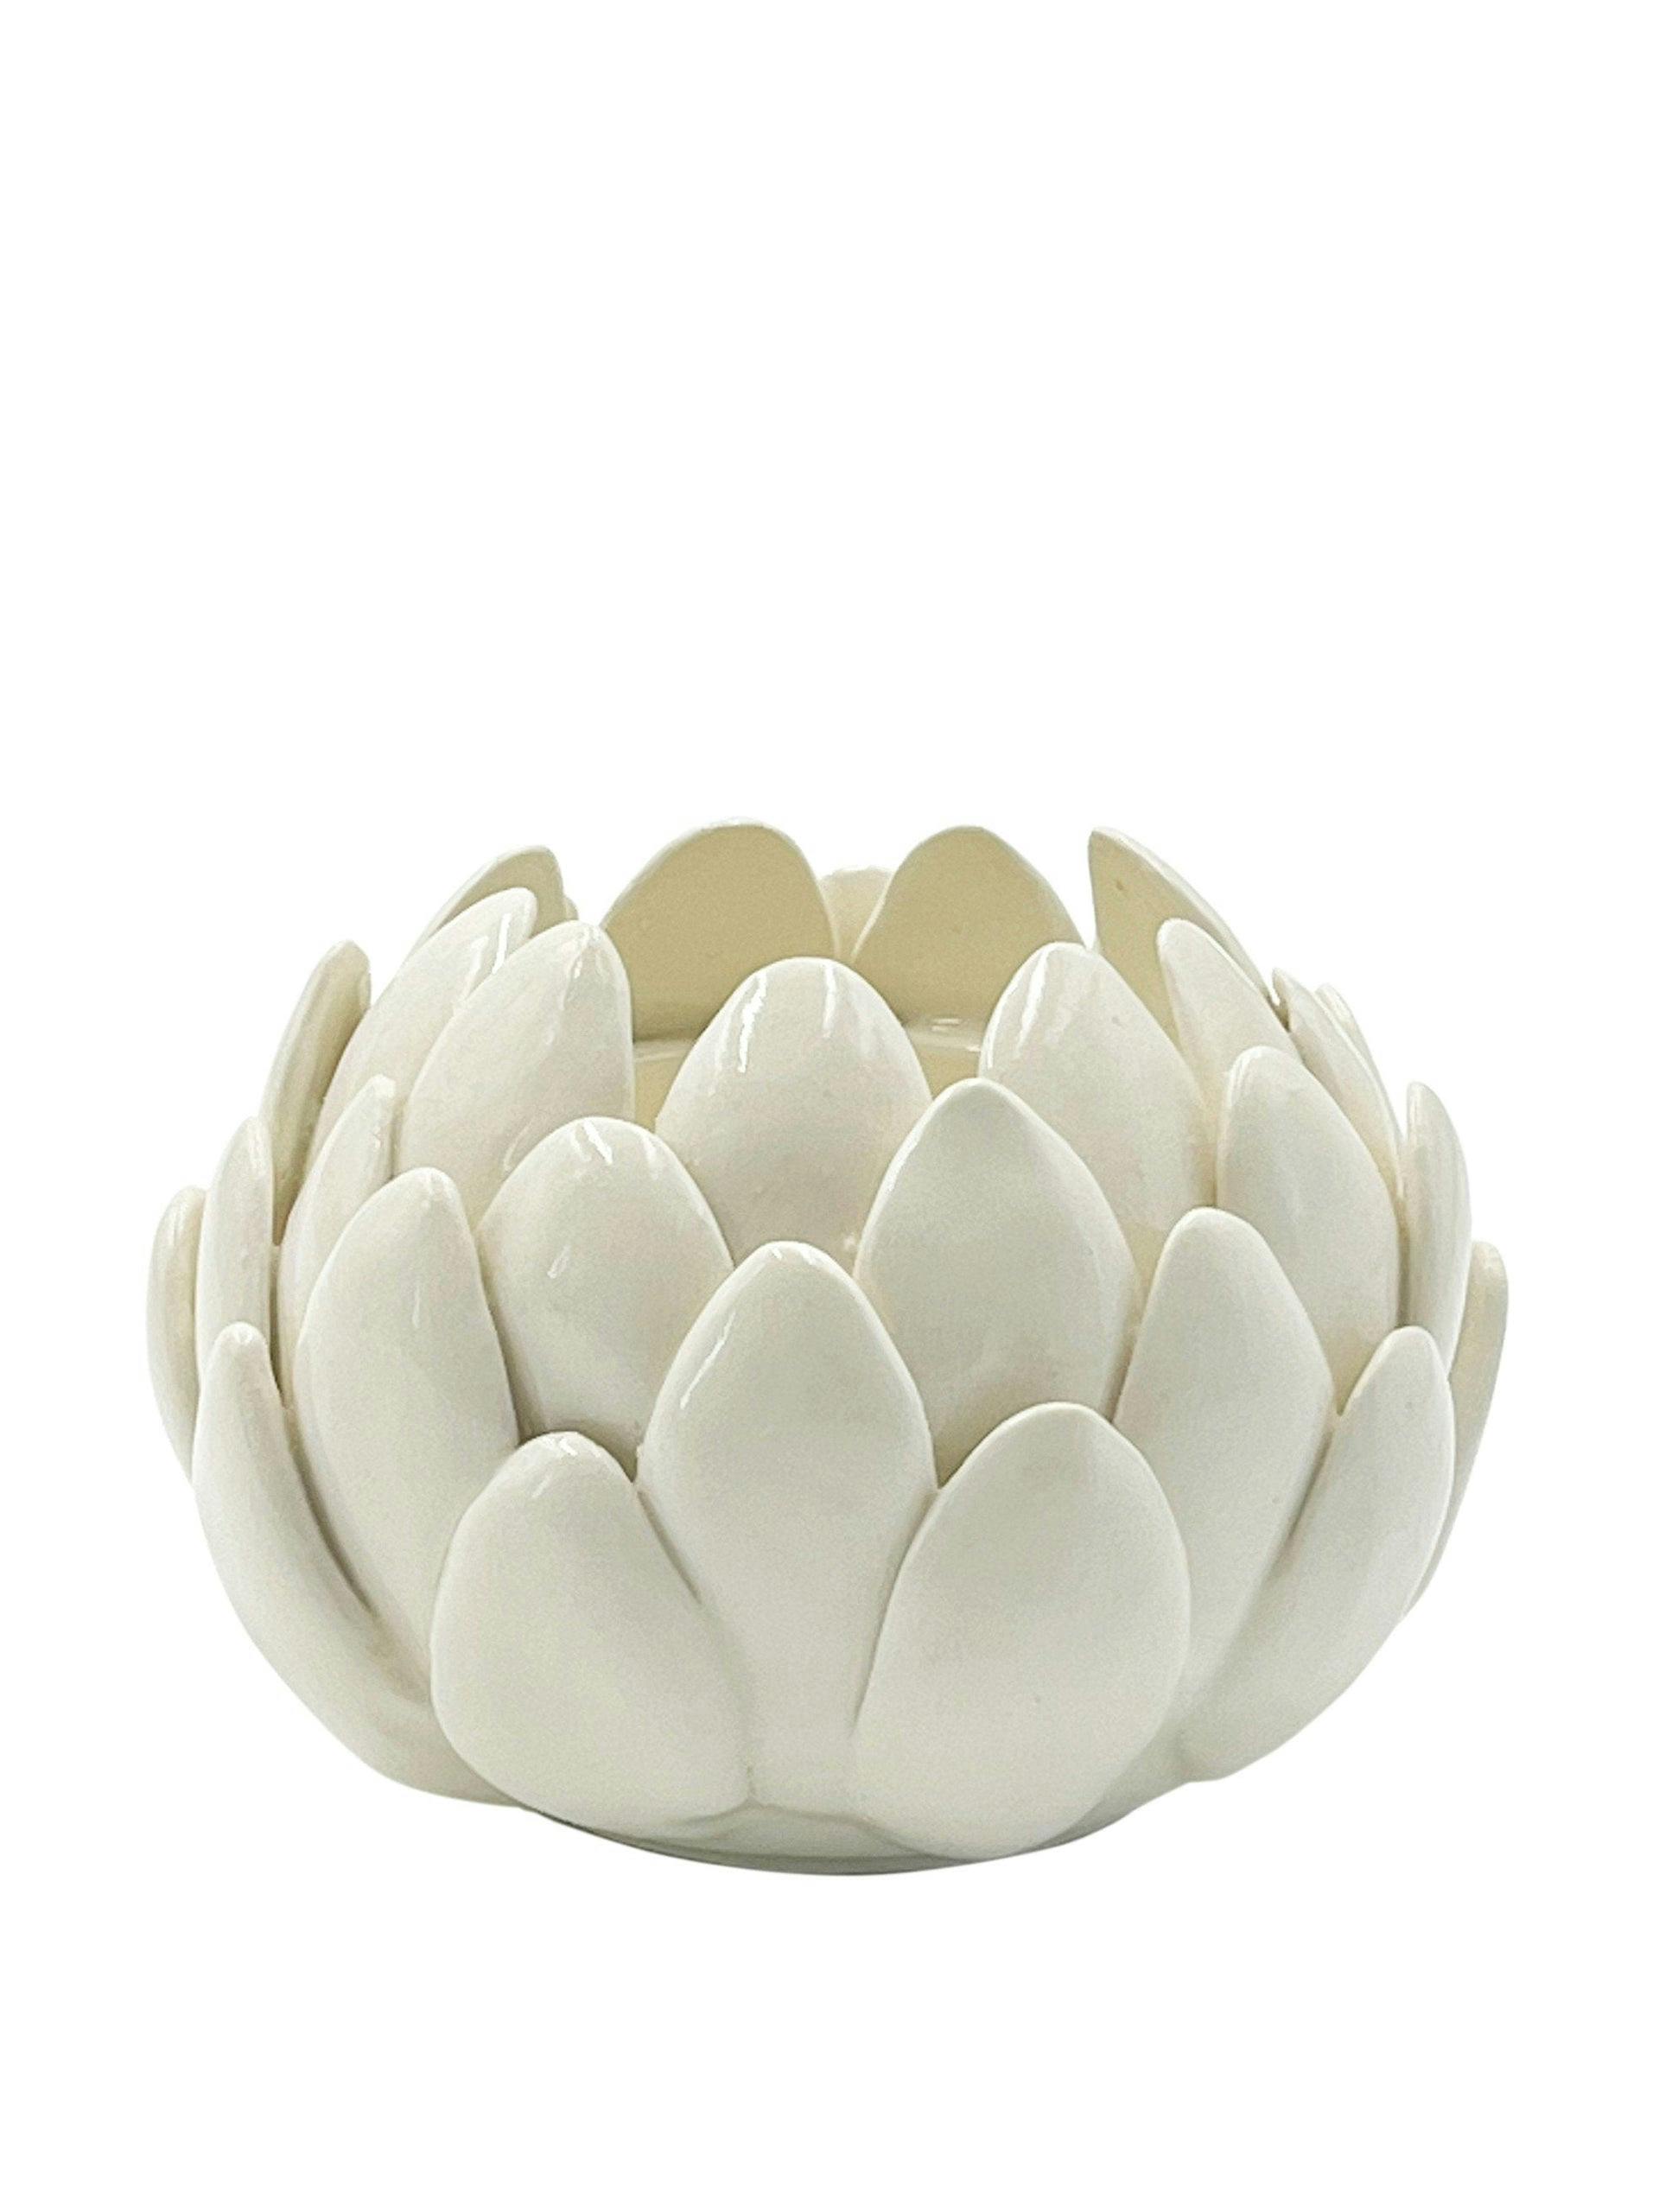 Artichoke bowl in cream, small